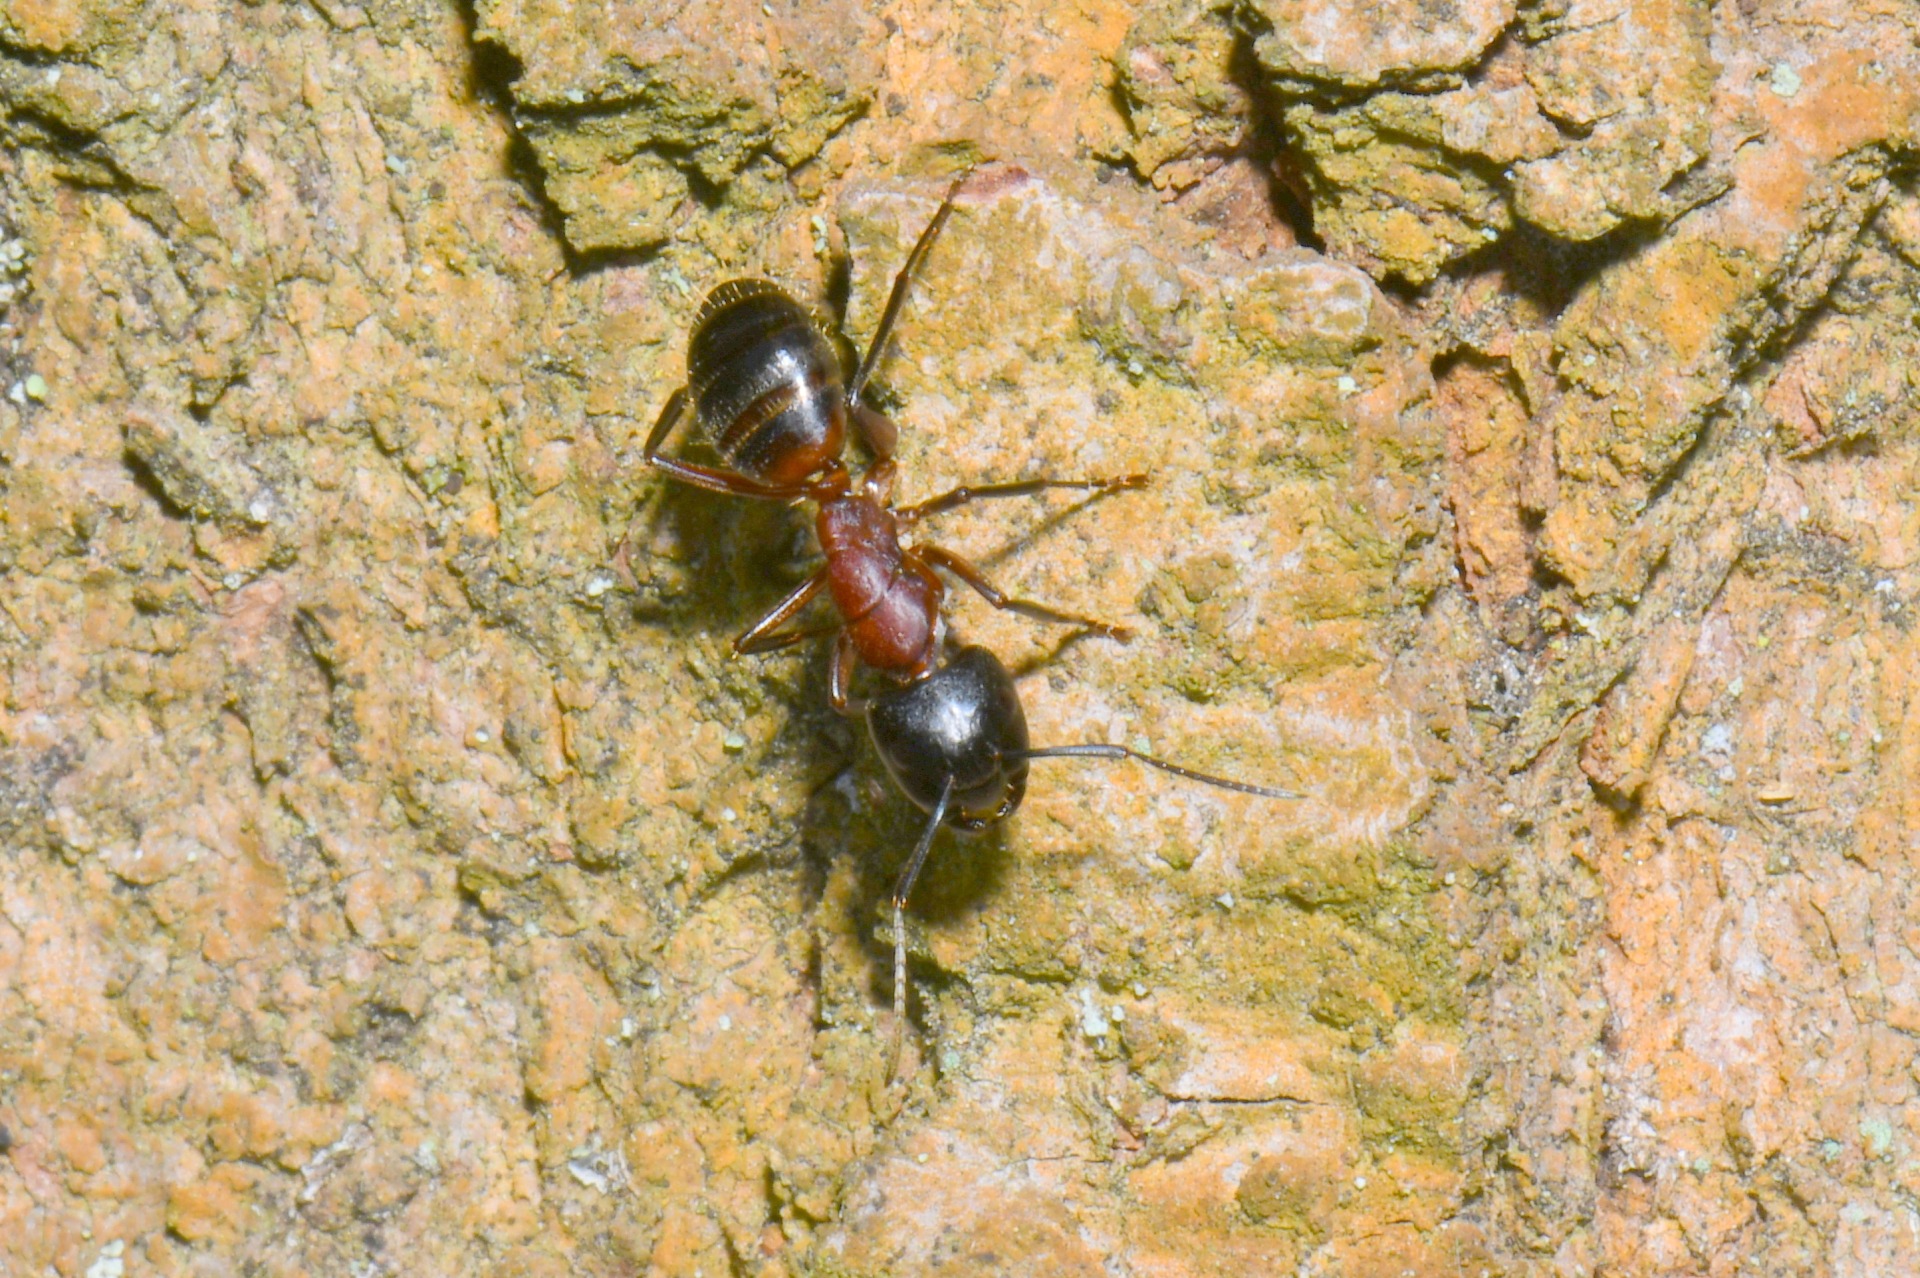 Camponotus ligniperda (Latreille, 1802) (ouvrière)